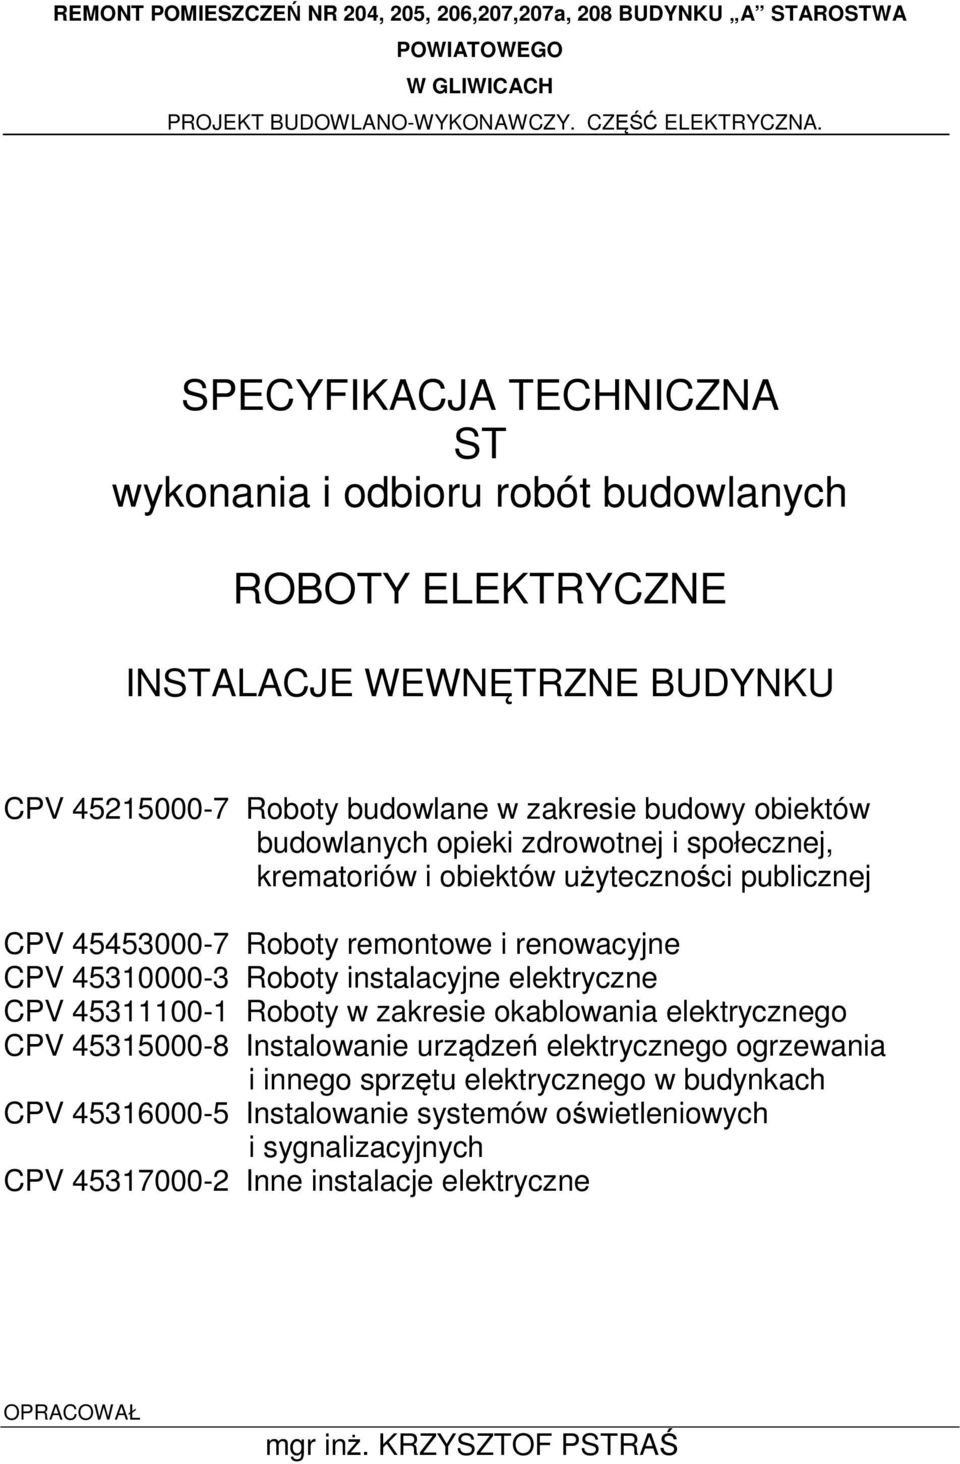 instalacyjne elektryczne CPV 45311100-1 Roboty w zakresie okablowania elektrycznego CPV 45315000-8 Instalowanie urządzeń elektrycznego ogrzewania i innego sprzętu